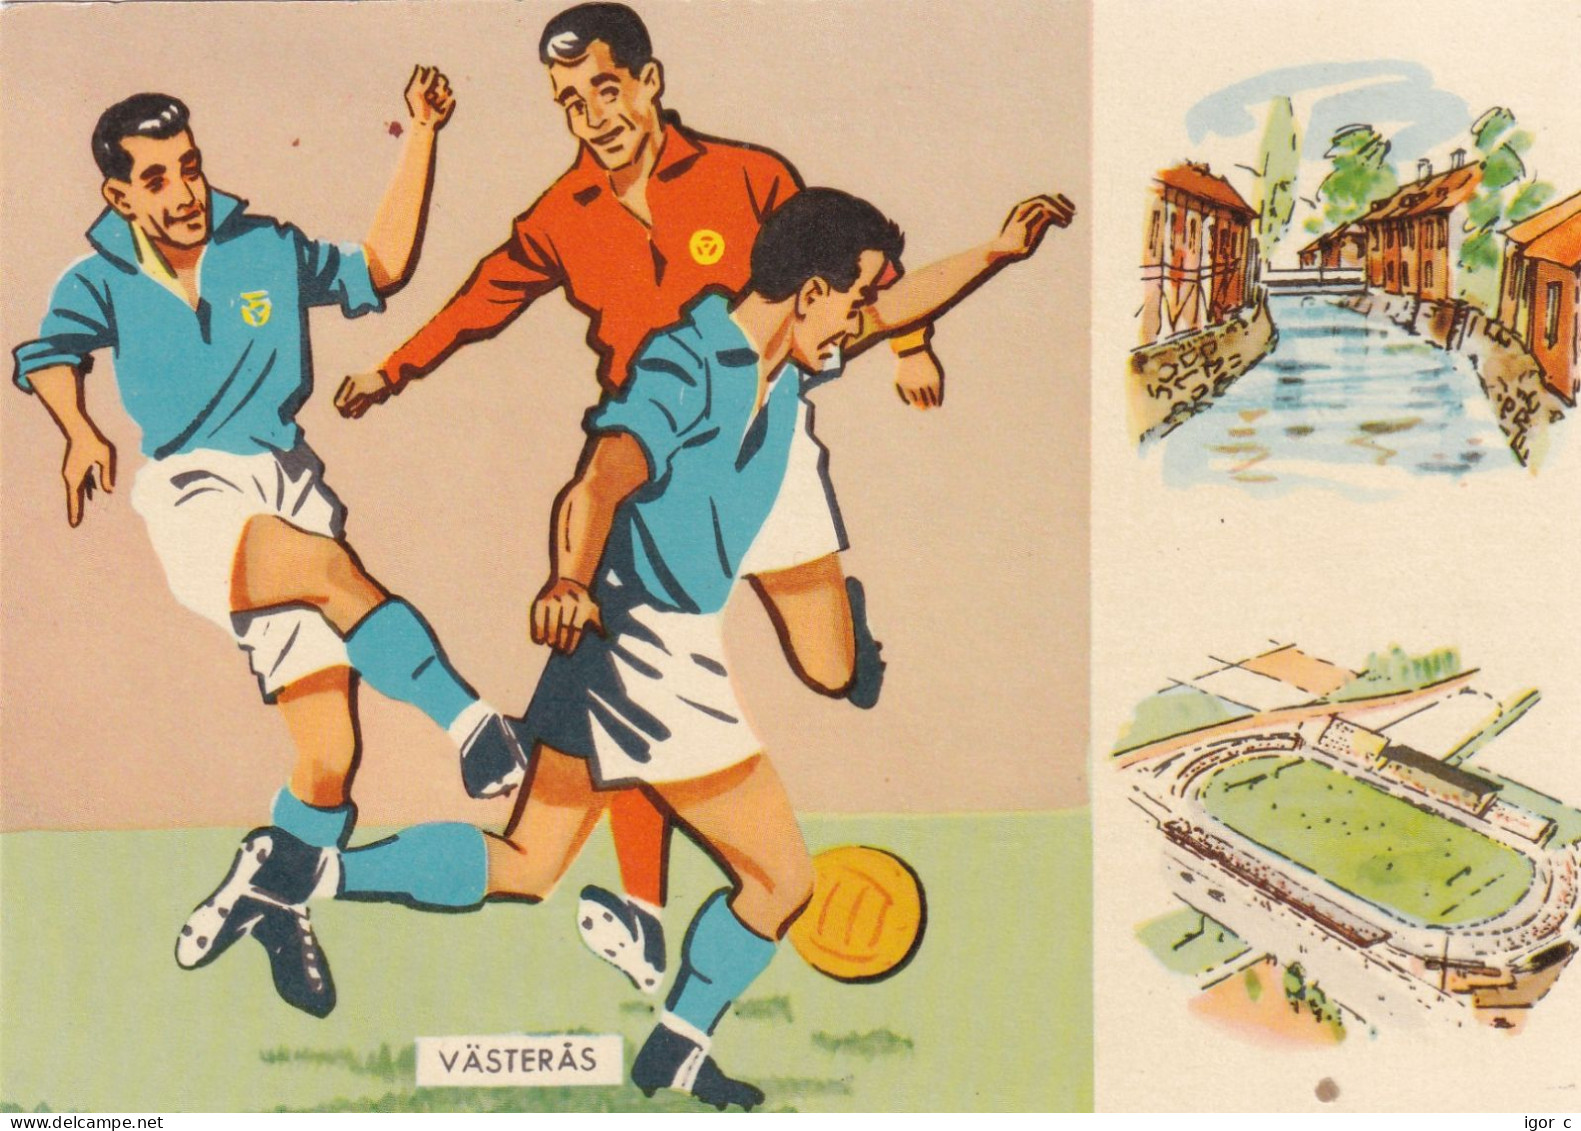 Sweden 1958 Card: Football Fussball Soccer Calcio; FIFA WC 1958 Sweden; France - Yugoslavia Match - 1958 – Sweden